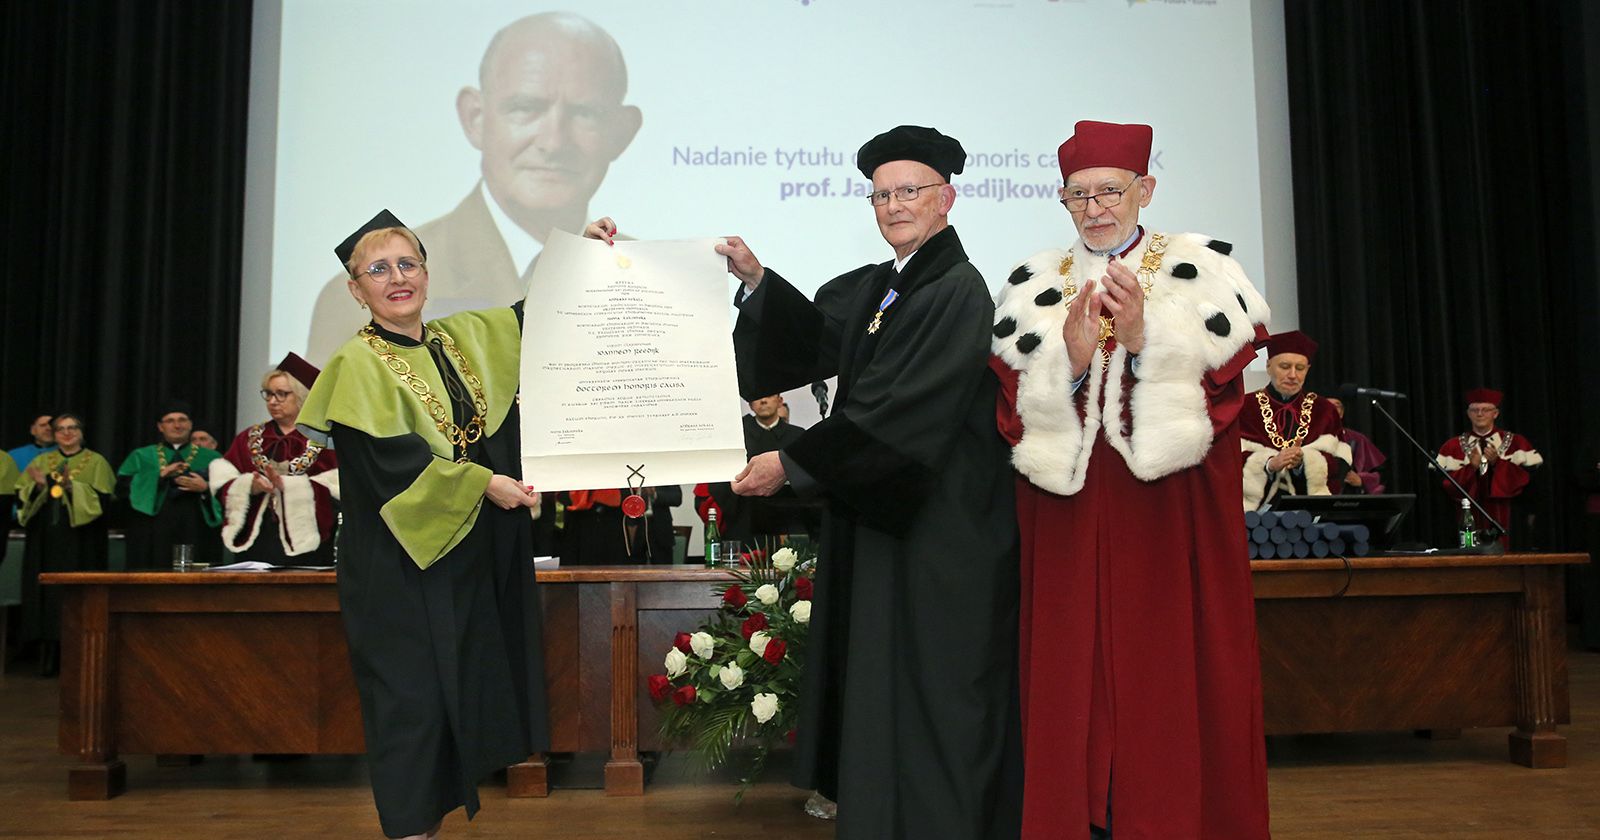 Prof. Jan Reedijk with NCU Honoris Causa Doctorate